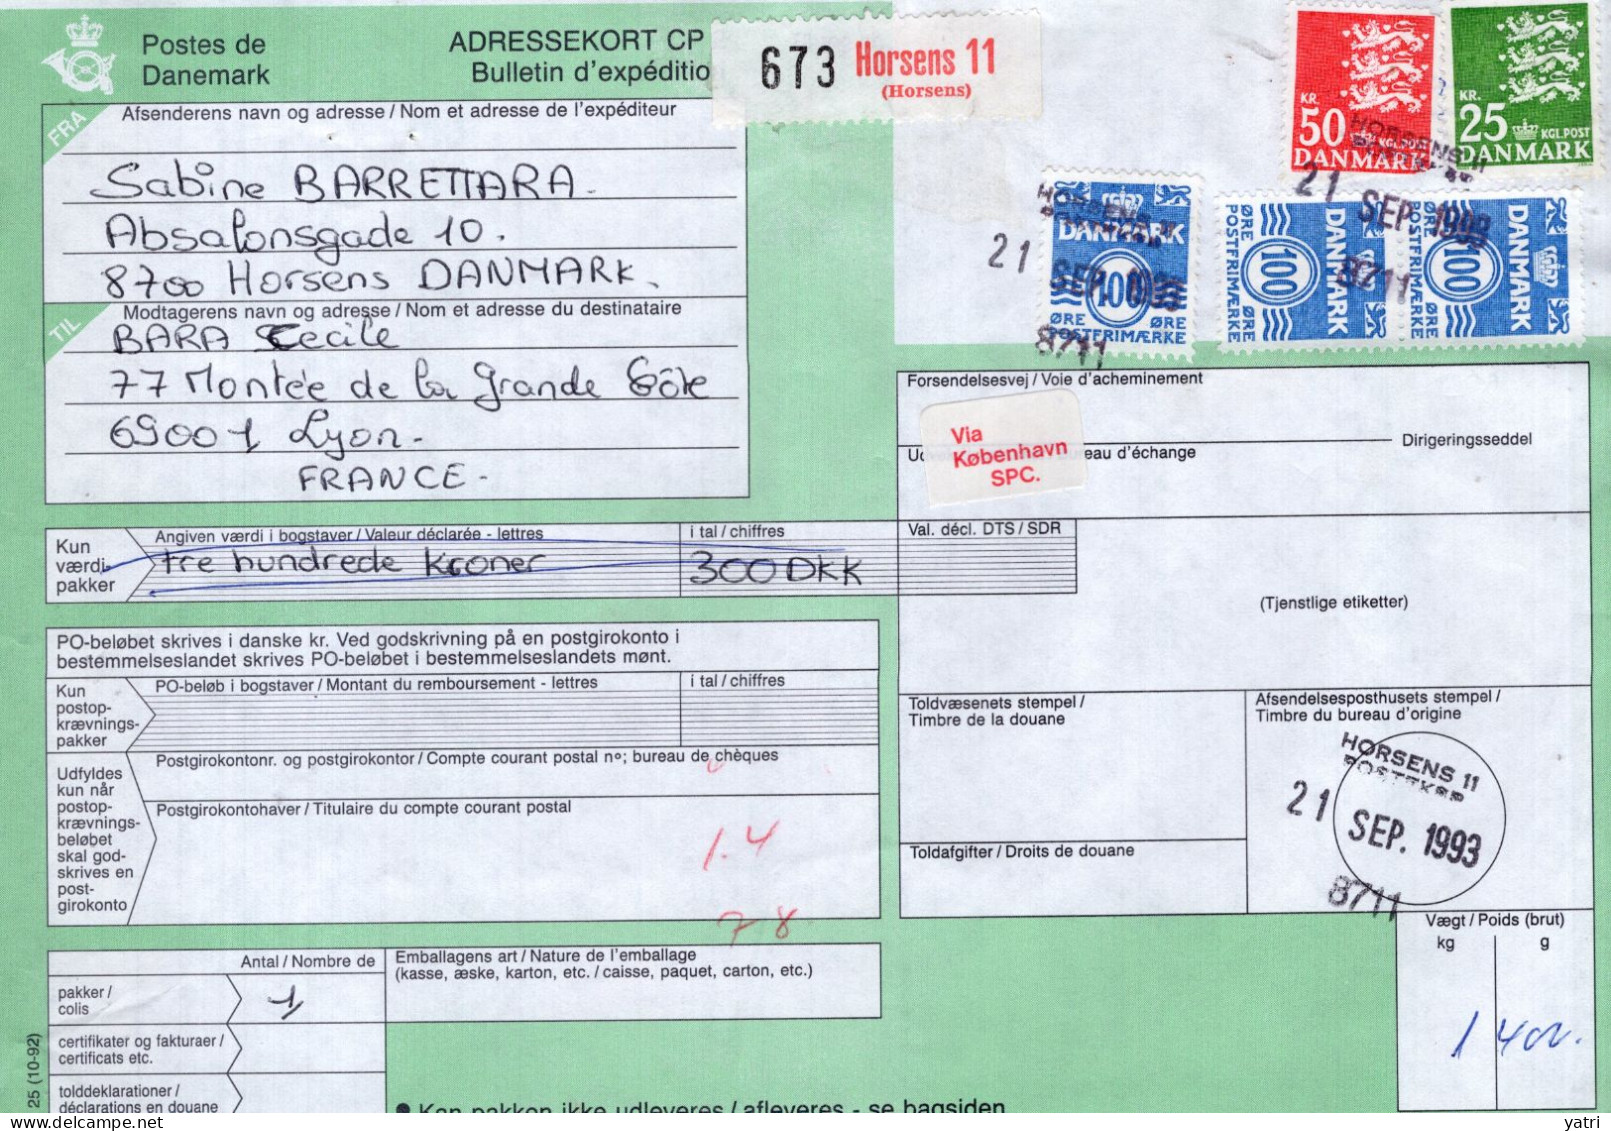 Danimarca (1993) - Bollettino Pacchi Per La Francia, Con Ricevuta Di Consegna - Briefe U. Dokumente